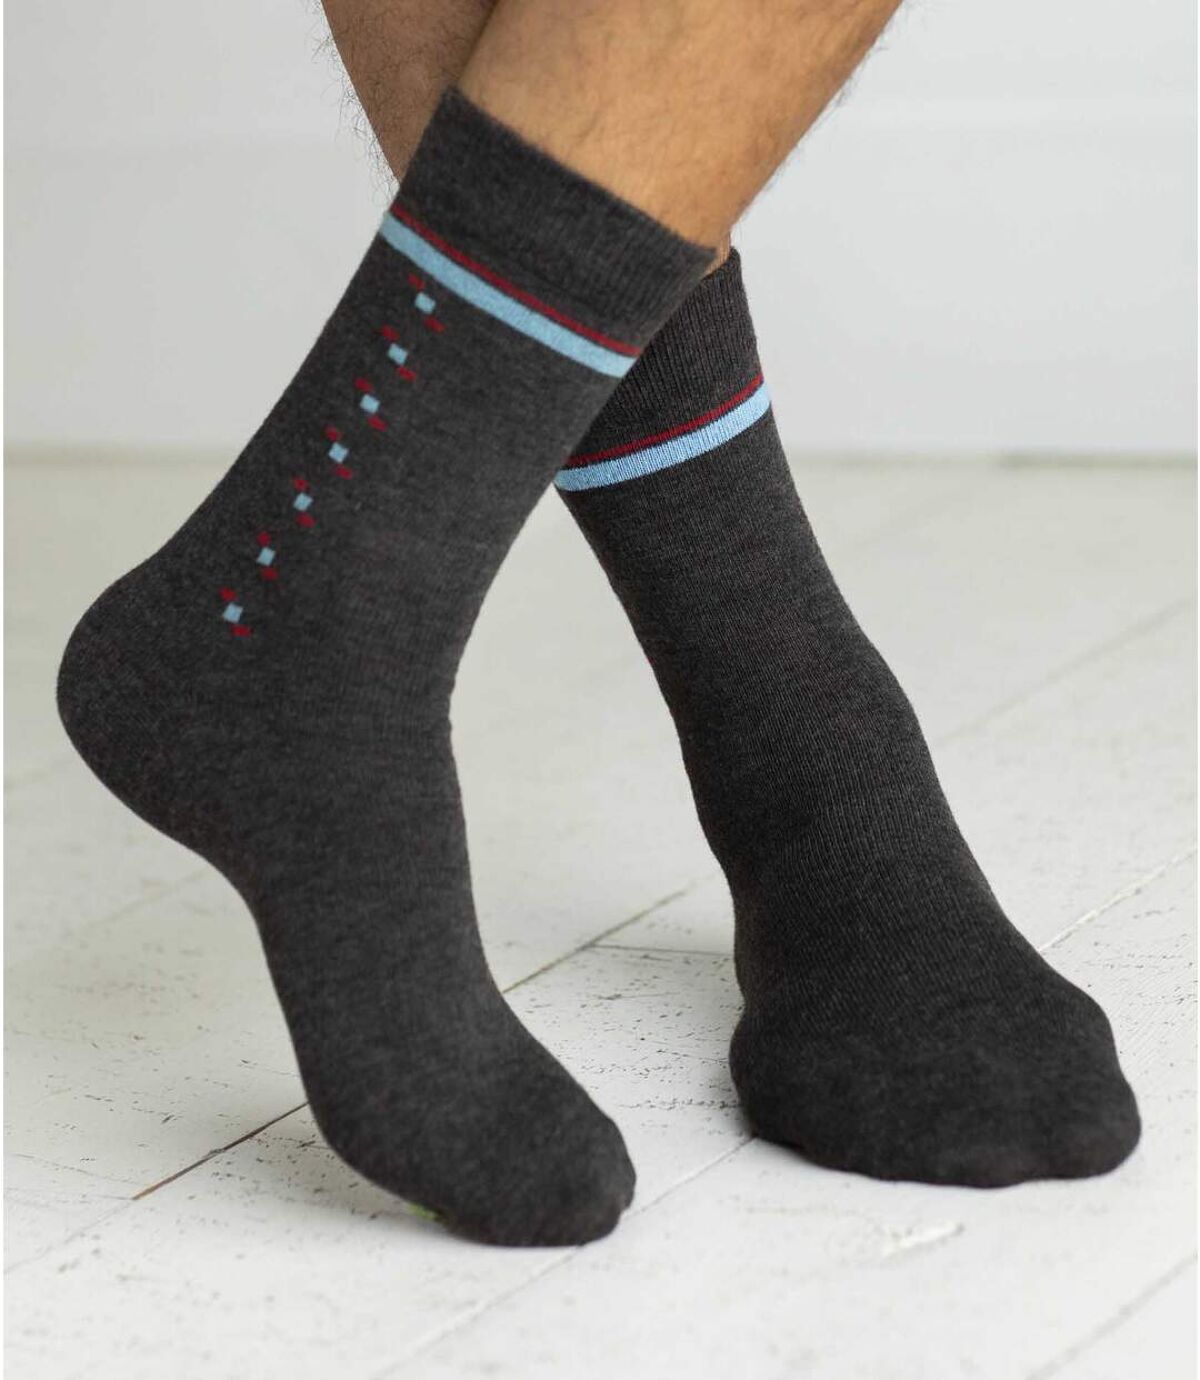 Pack of 4 Pairs of Men's Patterned Socks - Anthracite Light Gray Atlas For Men